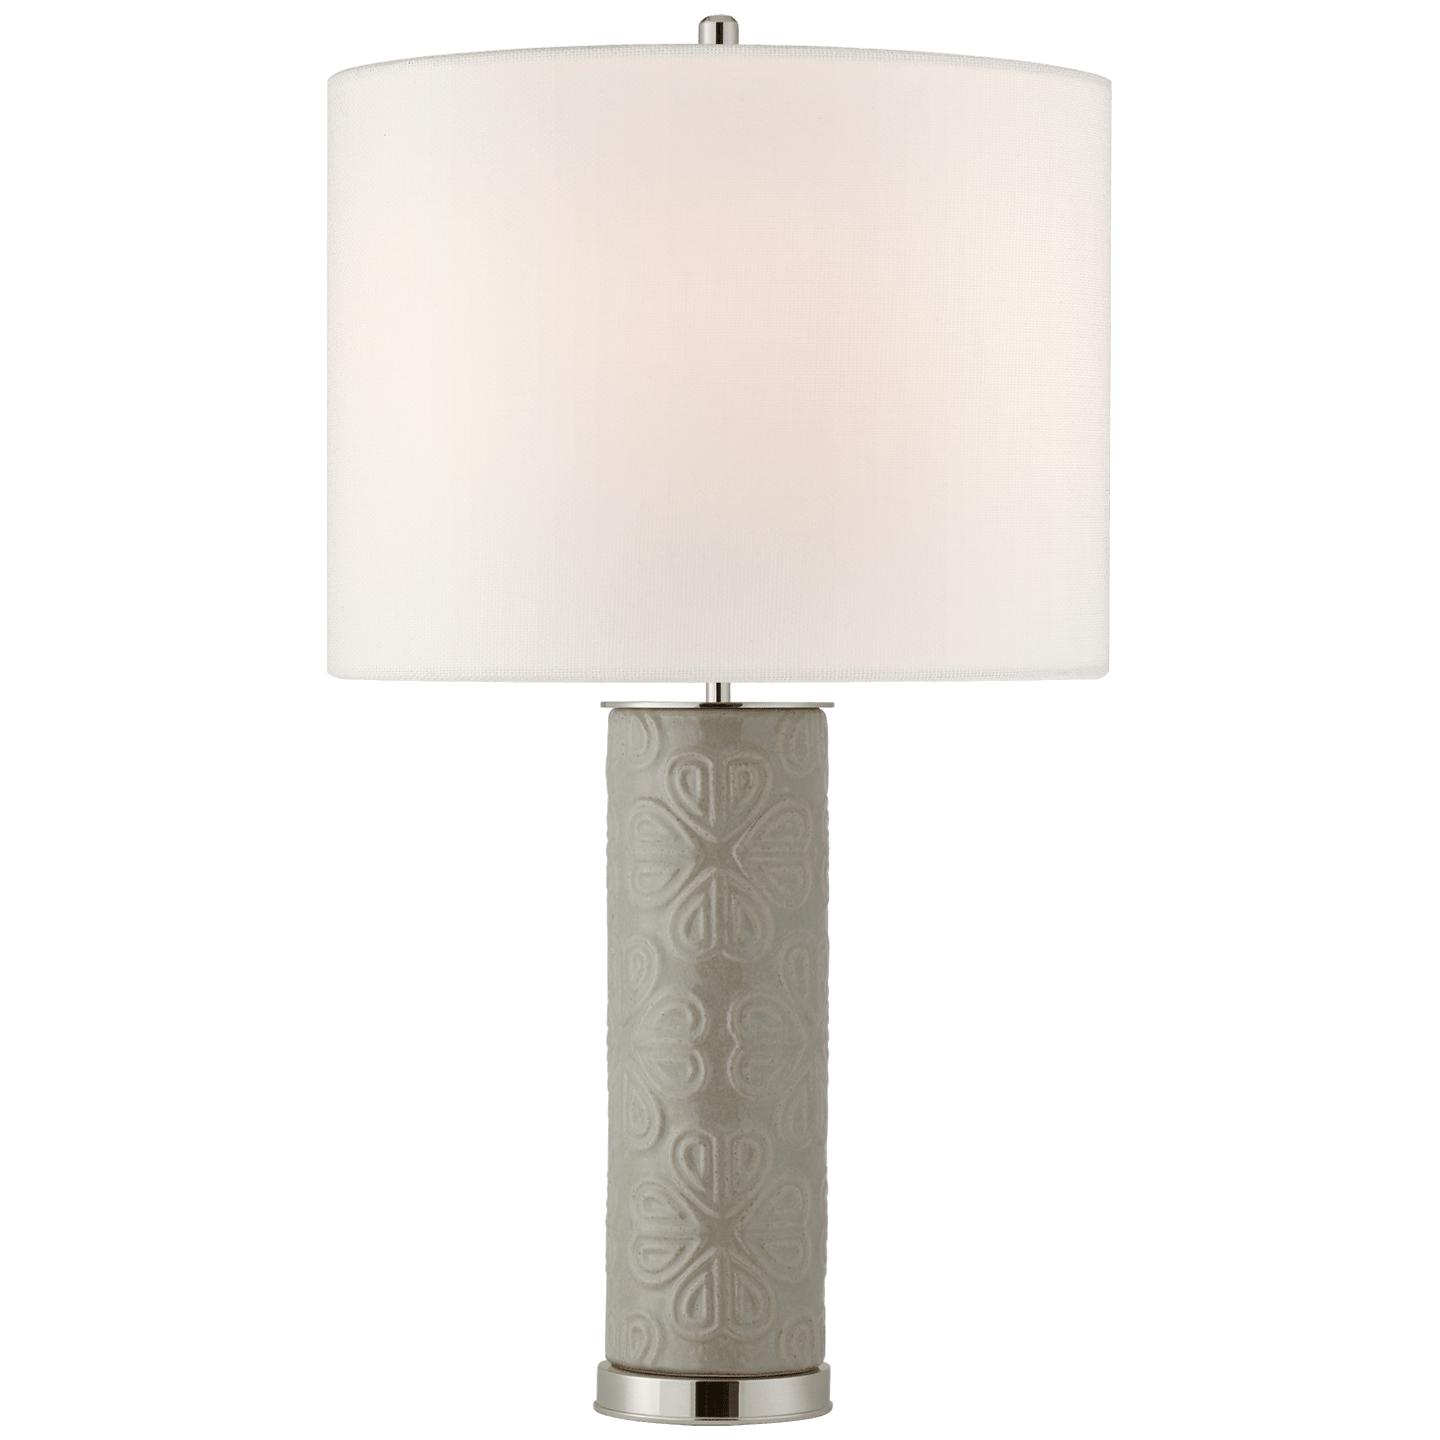 Купить Настольная лампа Clary Large Table Lamp в интернет-магазине roooms.ru